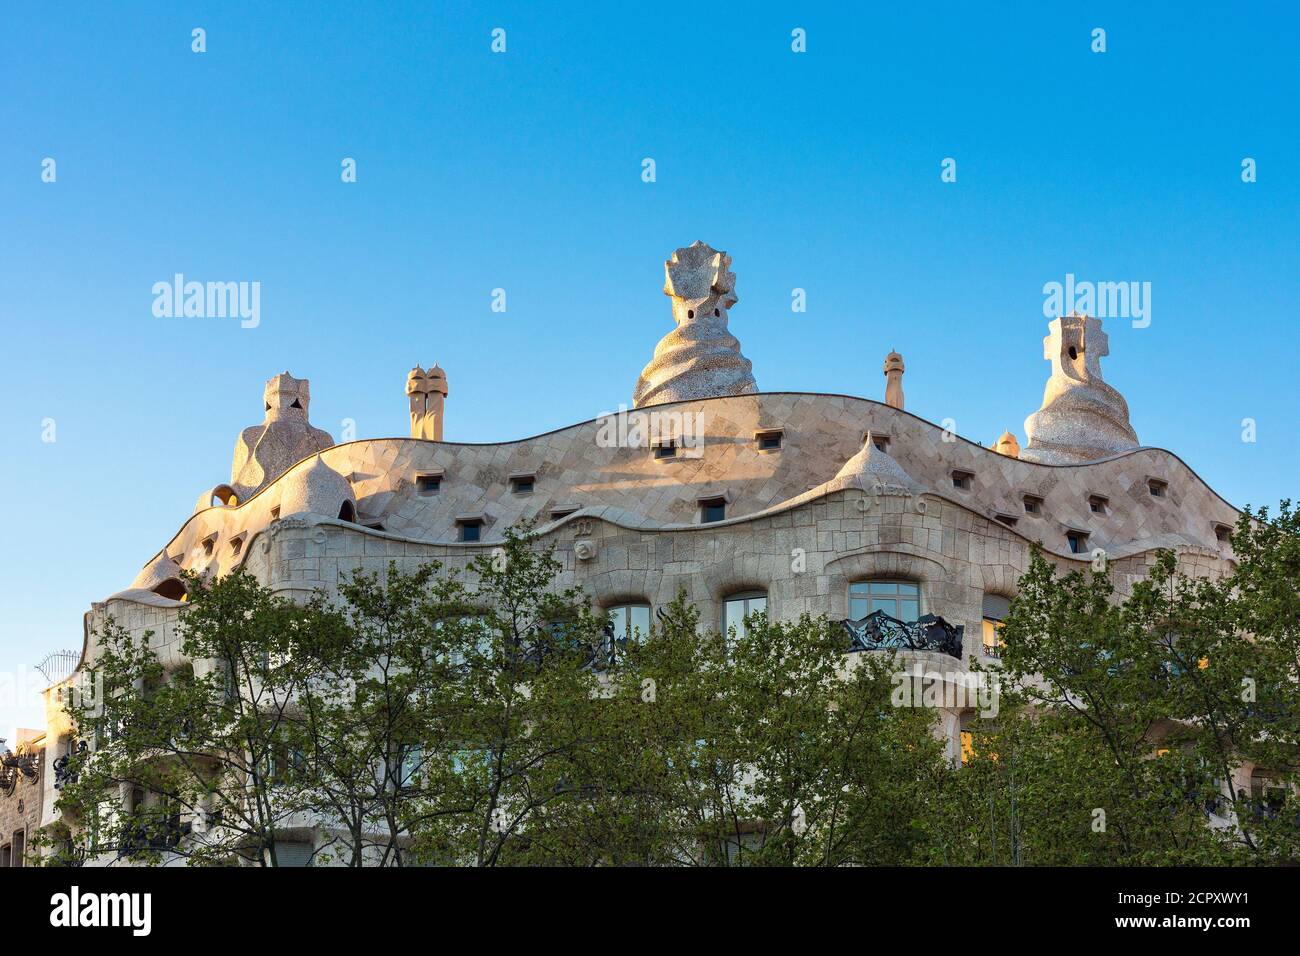 Barcelone, Casa Milá, la Pedrera, Antoni Gaudi, monument architectural, site classé au patrimoine mondial de l'UNESCO Banque D'Images